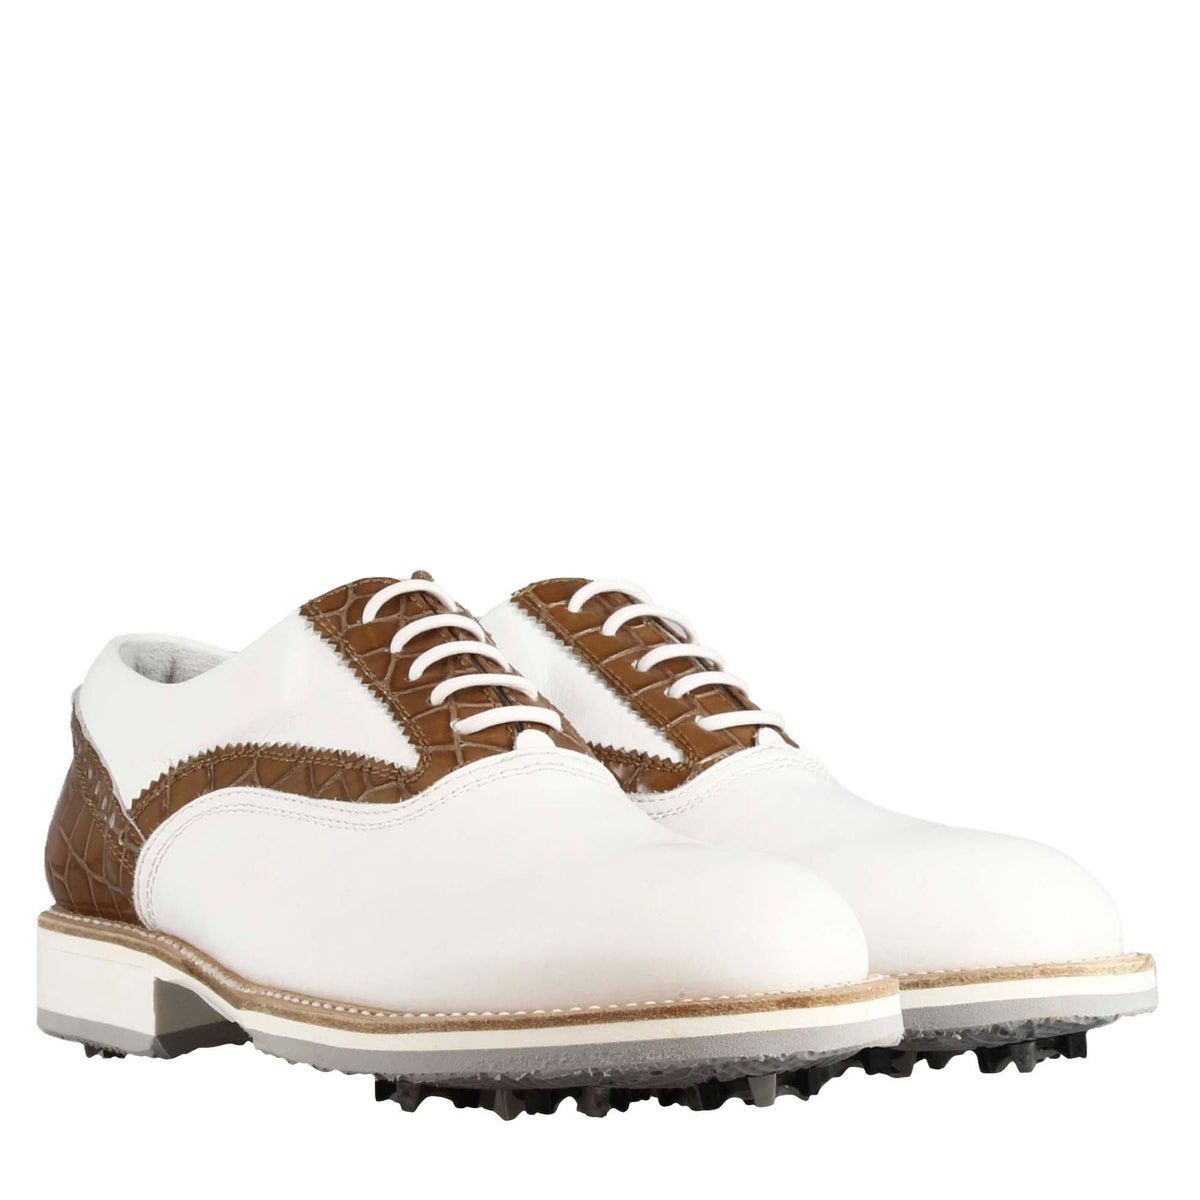 Handgefertigte Damen-Golfschuhe aus weißem Leder mit hellbraunen Details